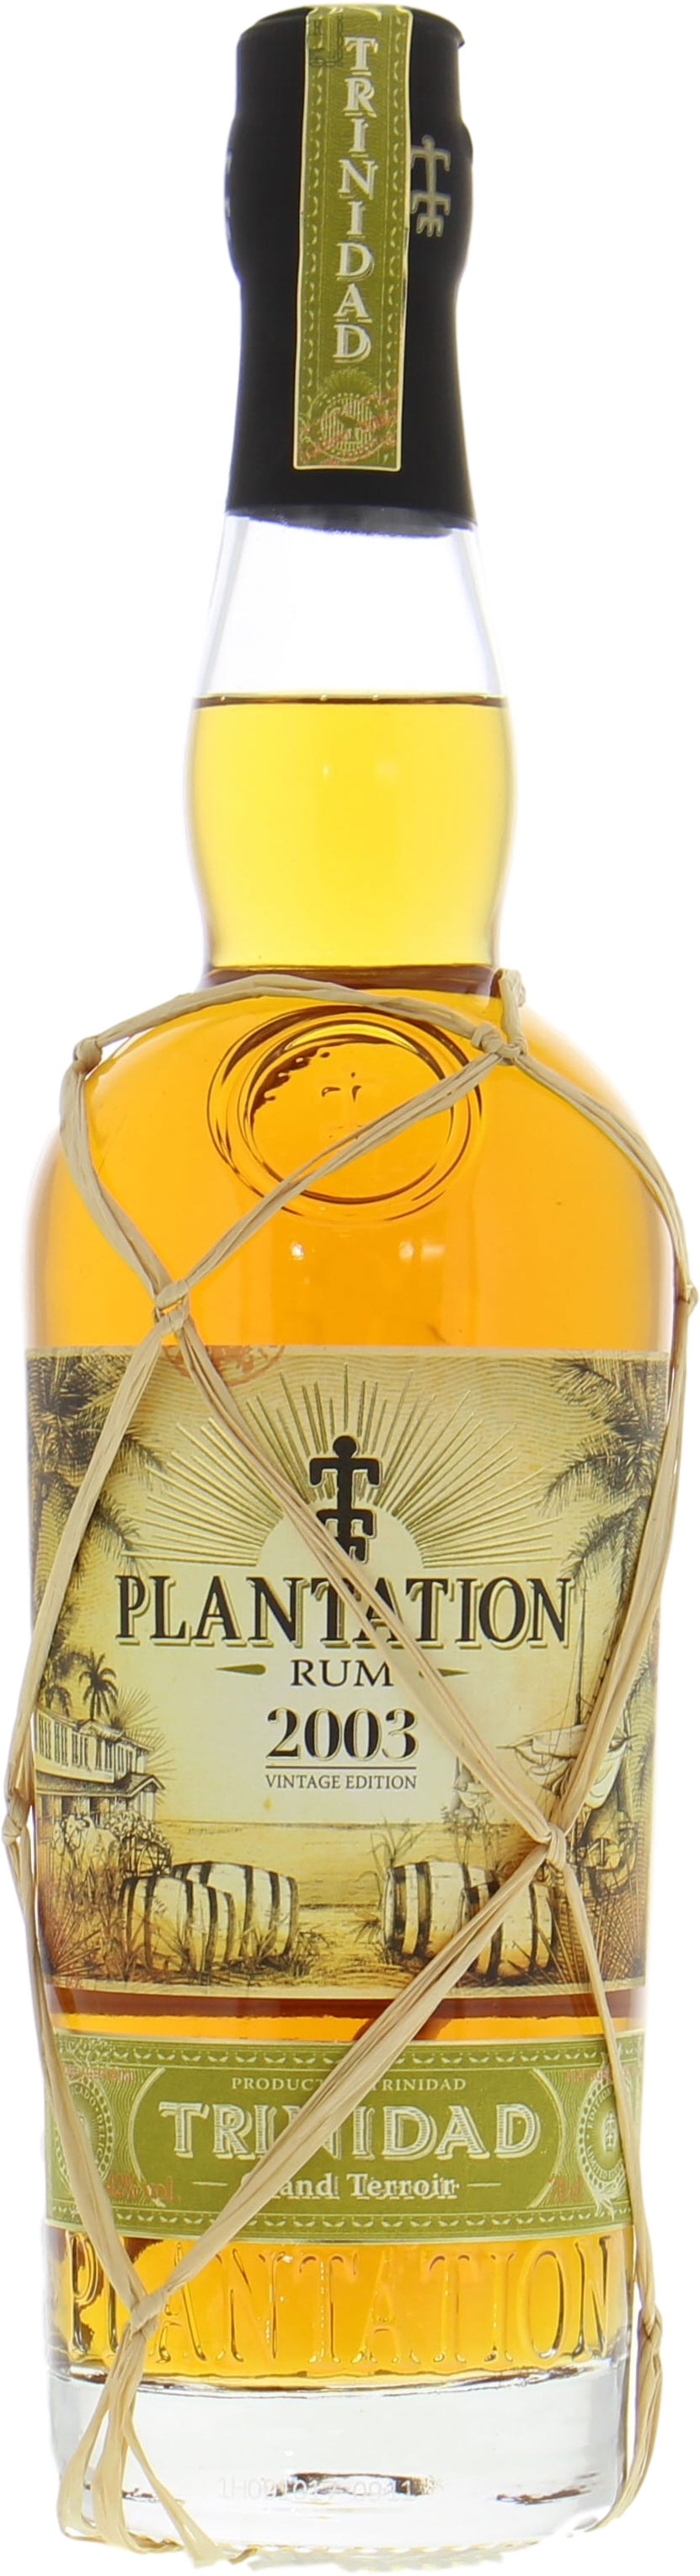 Plantation Rum - Trinidad Vintage Edition 2003 42% 2003 Perfect